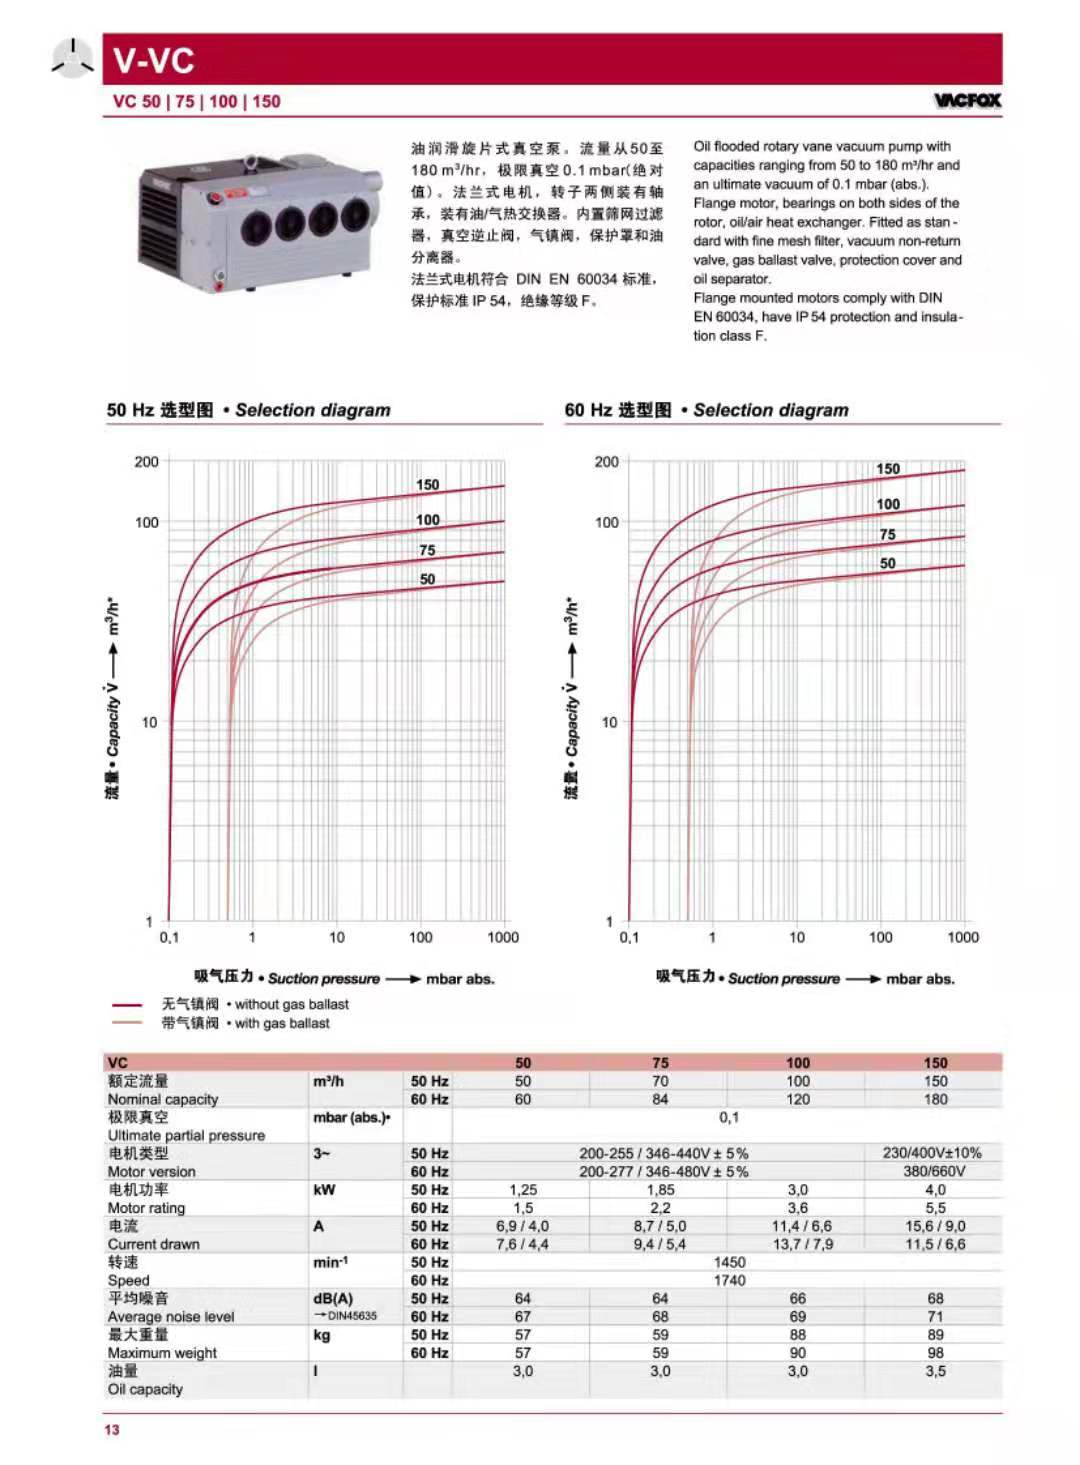 VC50-VC150中文参数图.jpg